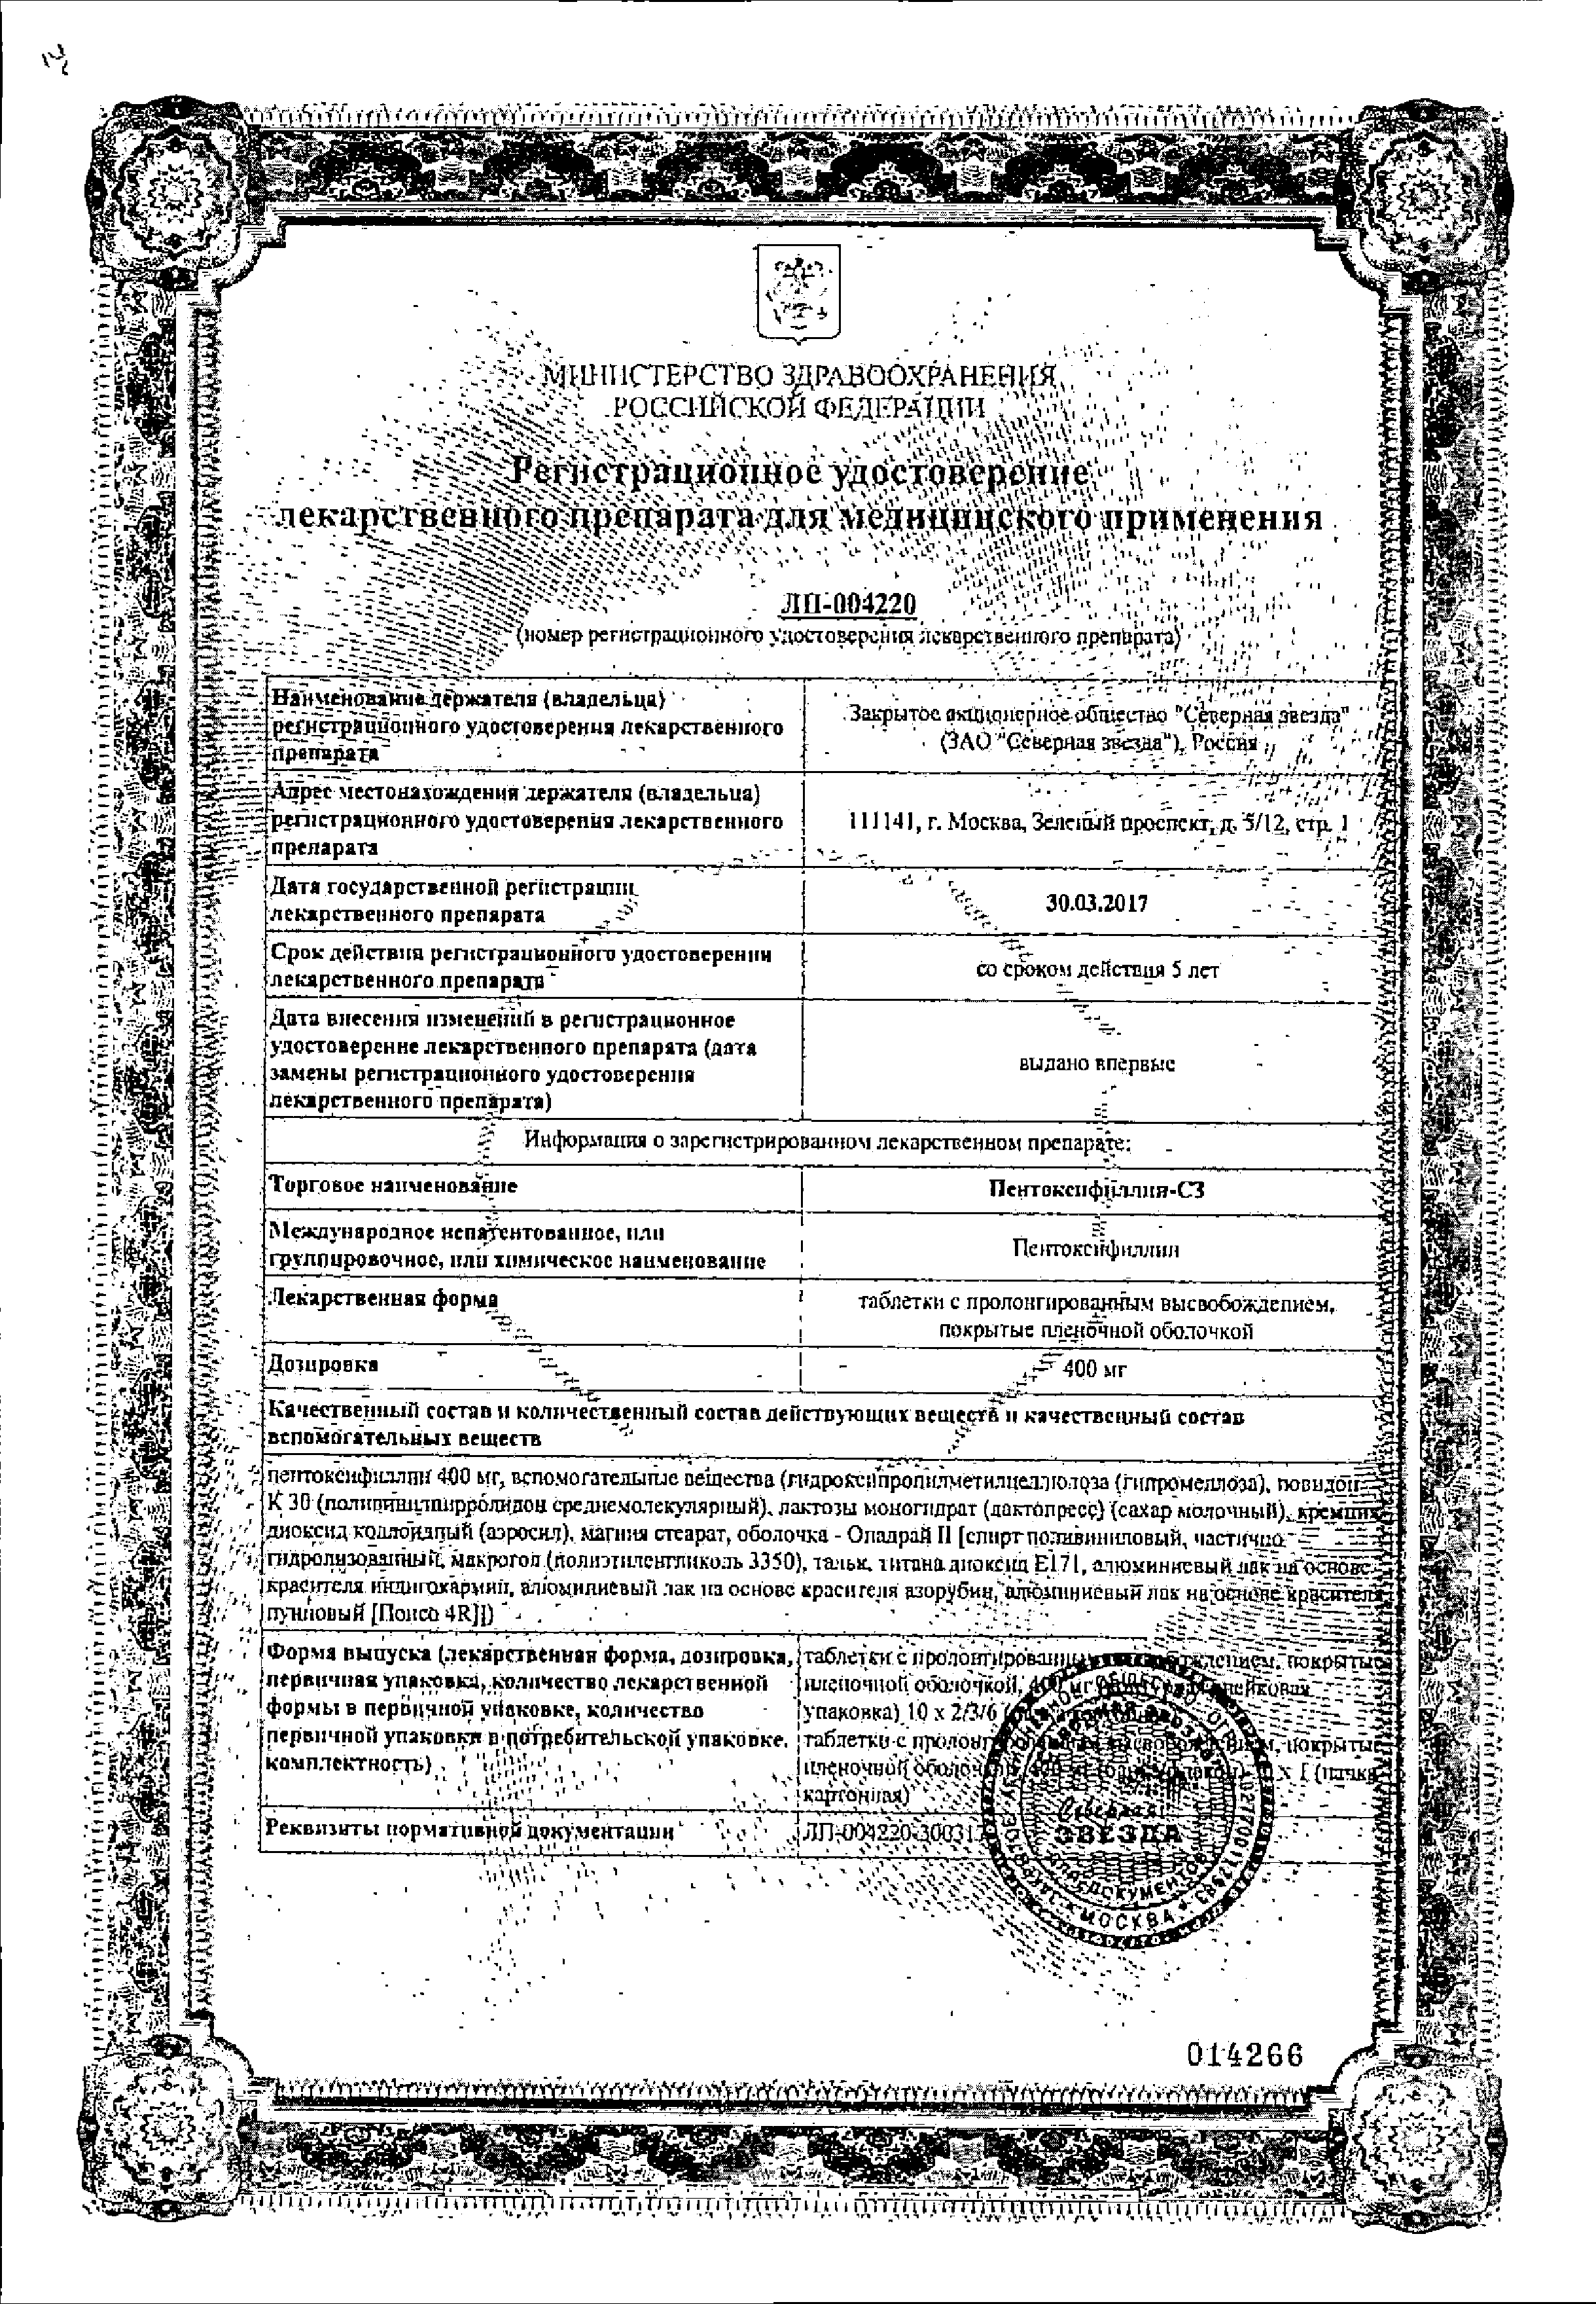 Пентоксифиллин-СЗ сертификат